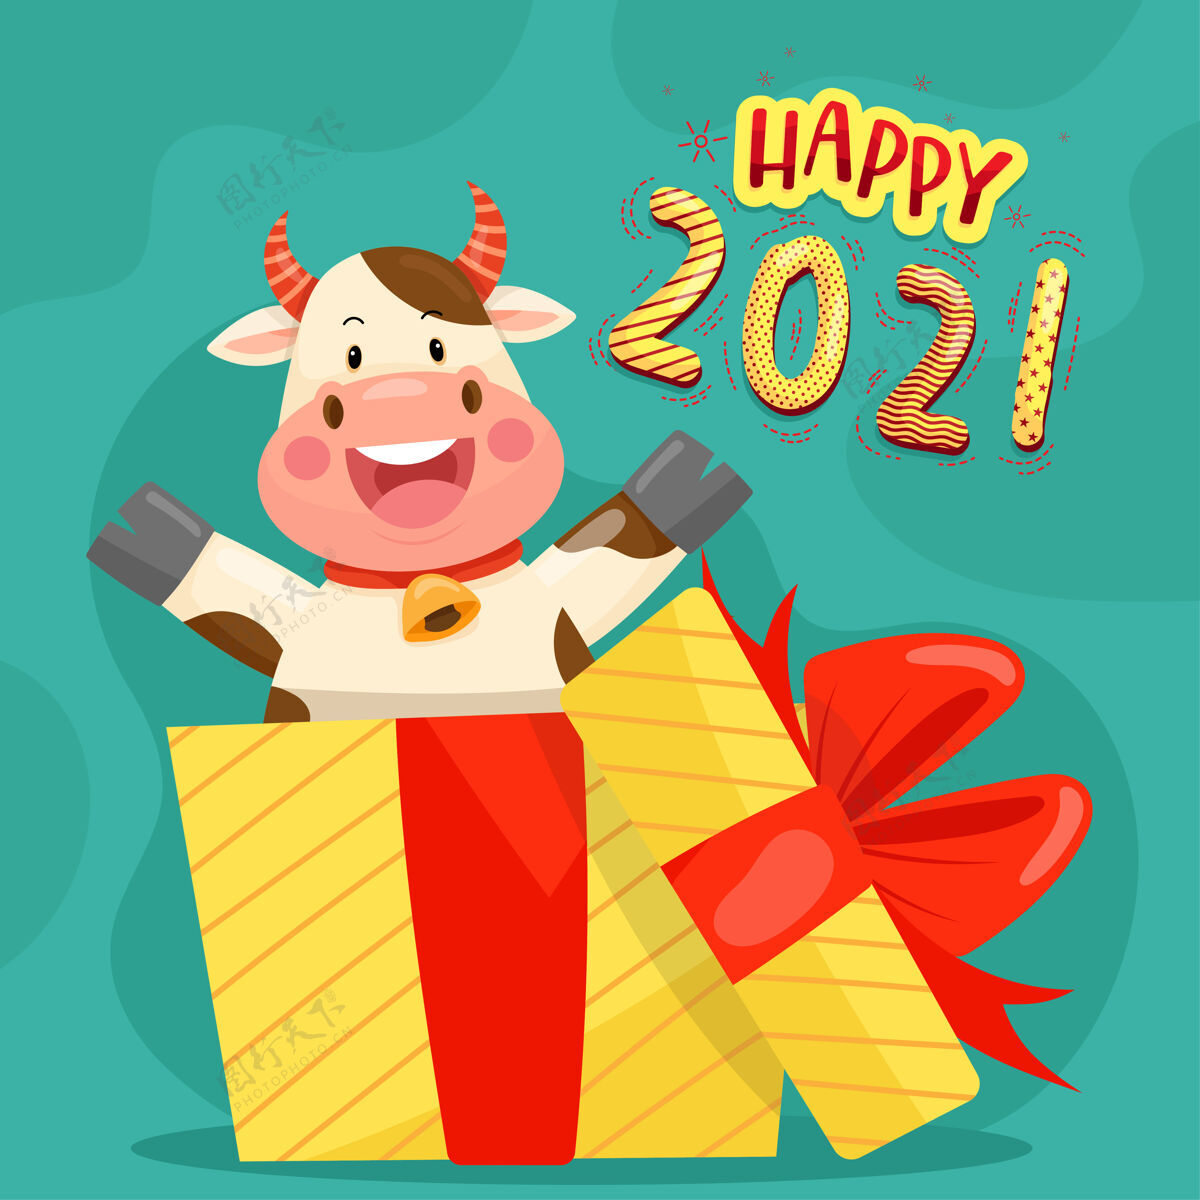 节日2021年新年快乐 红掌人物面带微笑新年年庆祝